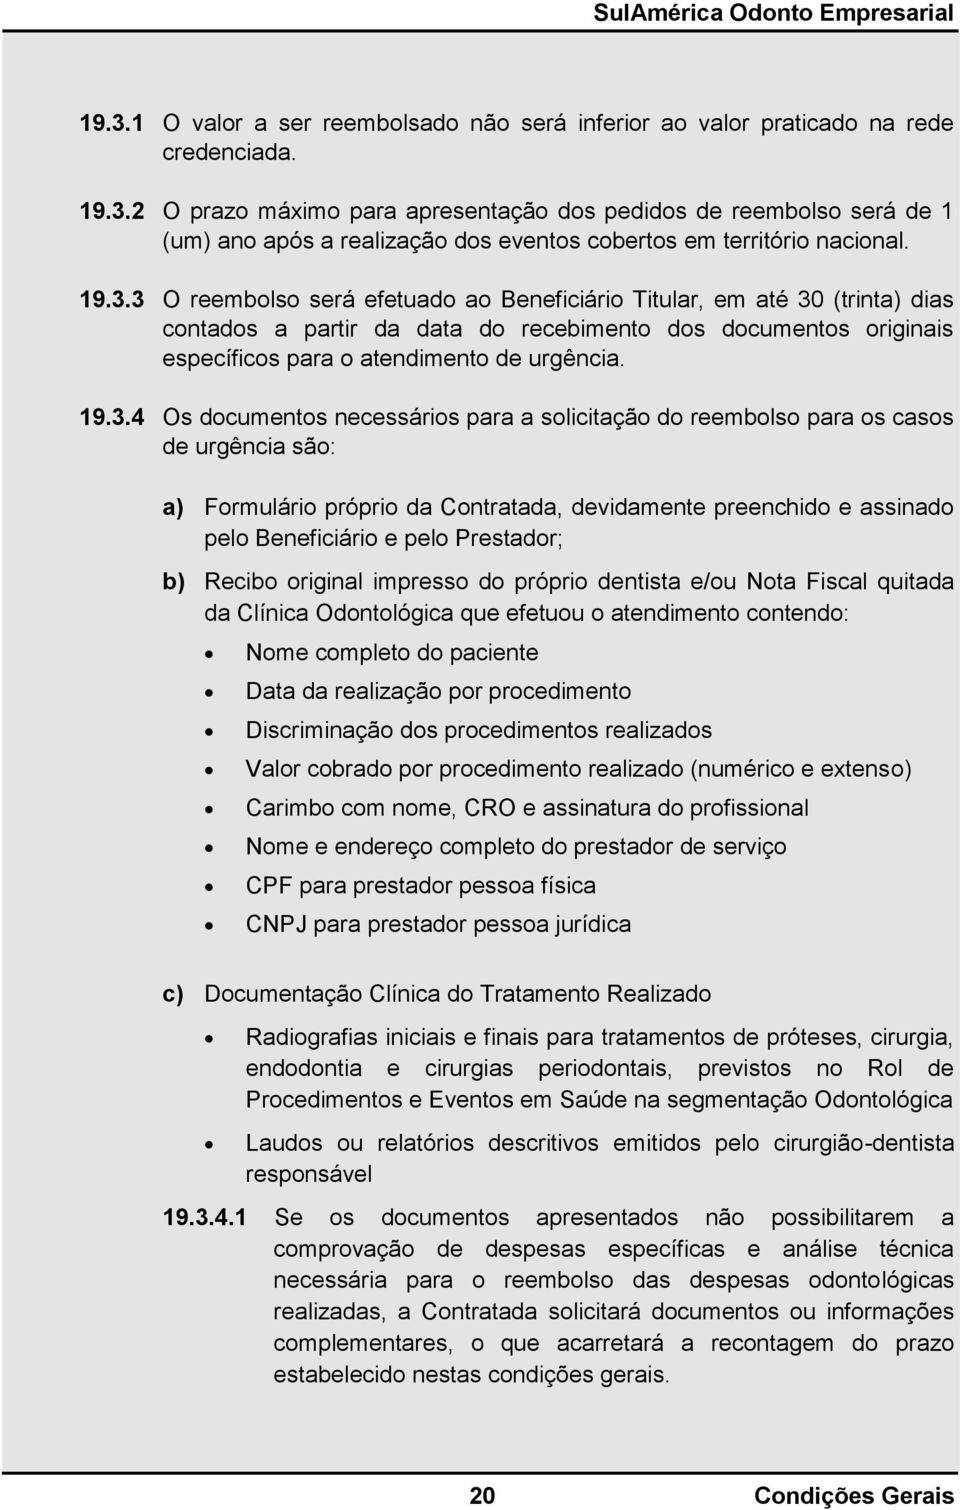 SulAmérica Odonto Empresarial Condições Gerais - PDF Free Download